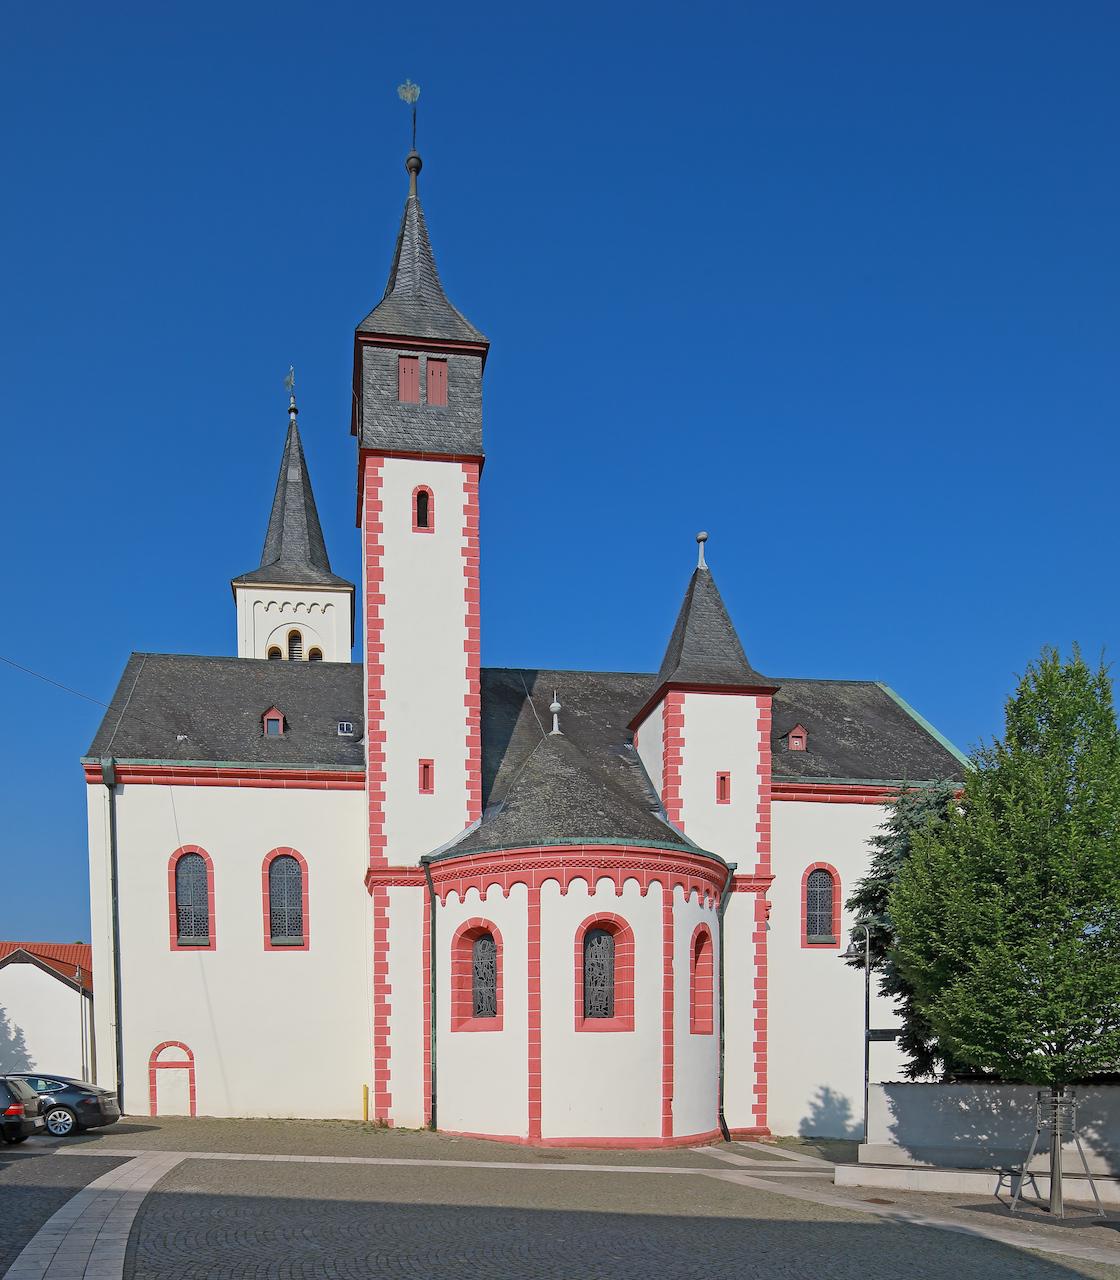 Die Saalkirche ist ein einschiffiger Bau in Form eines lateinischen Kreuzes. In ihren ältesten Teilen wurde sie um das Jahr 1000 unter den Ottonen erbaut. Das heutige Längsschiff wurde erst 1965 auf den alten Grundmauern wieder errichtet.